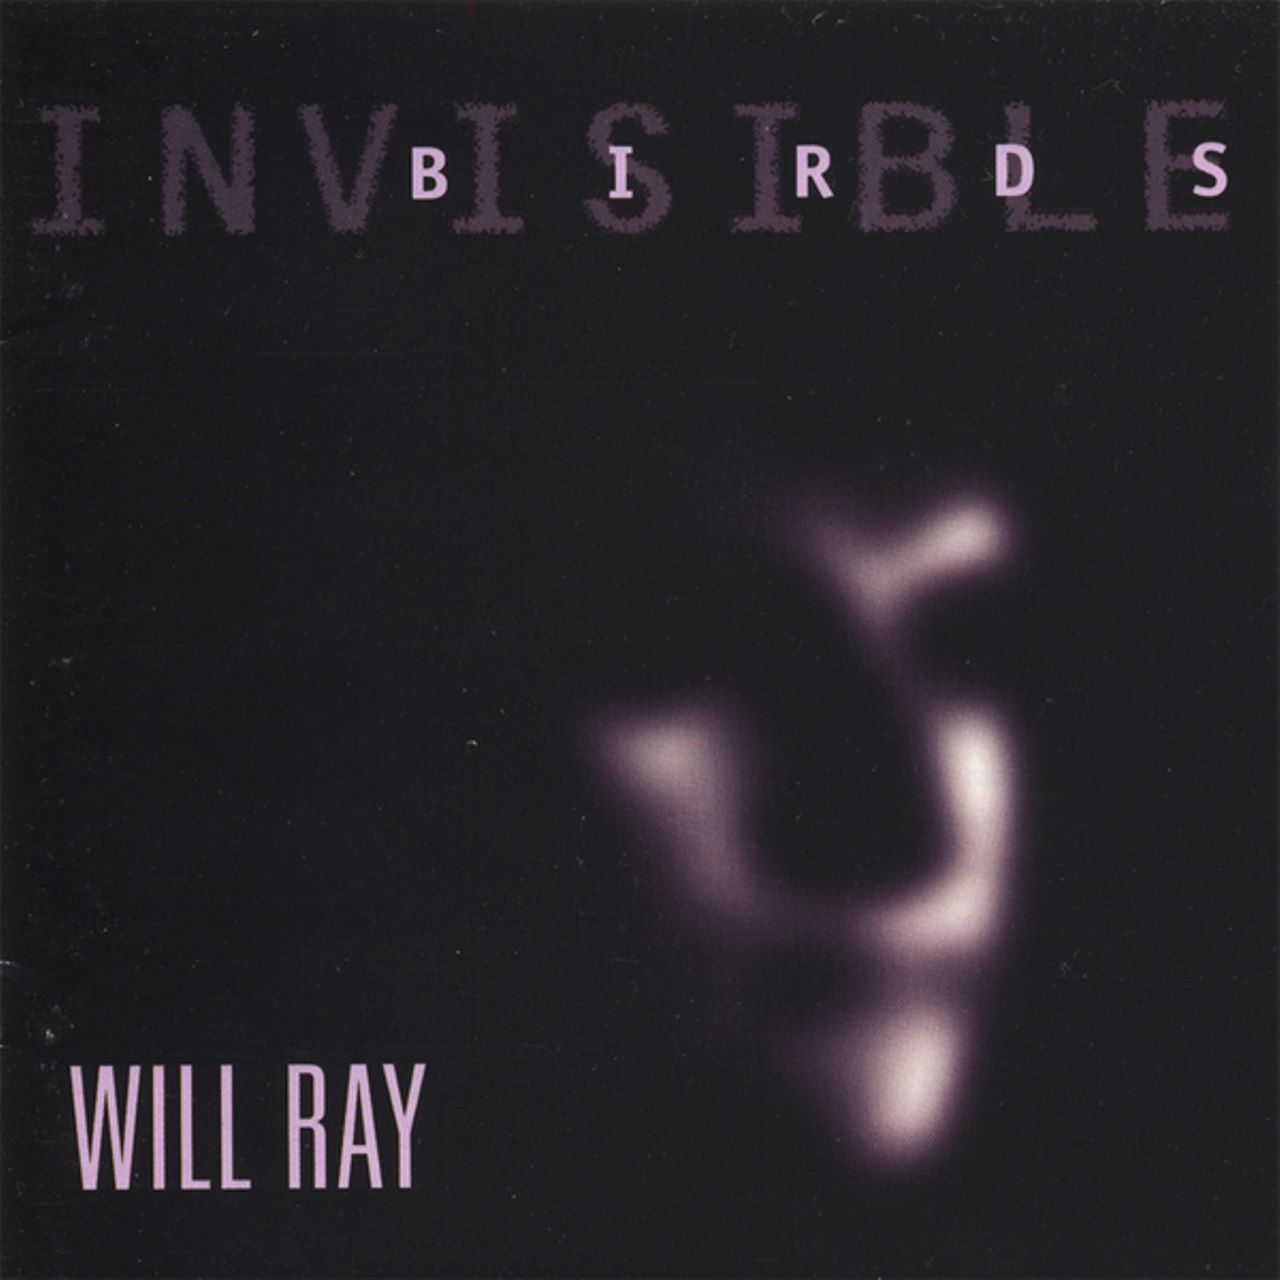 Will Ray – “Invisible Birds” cover album